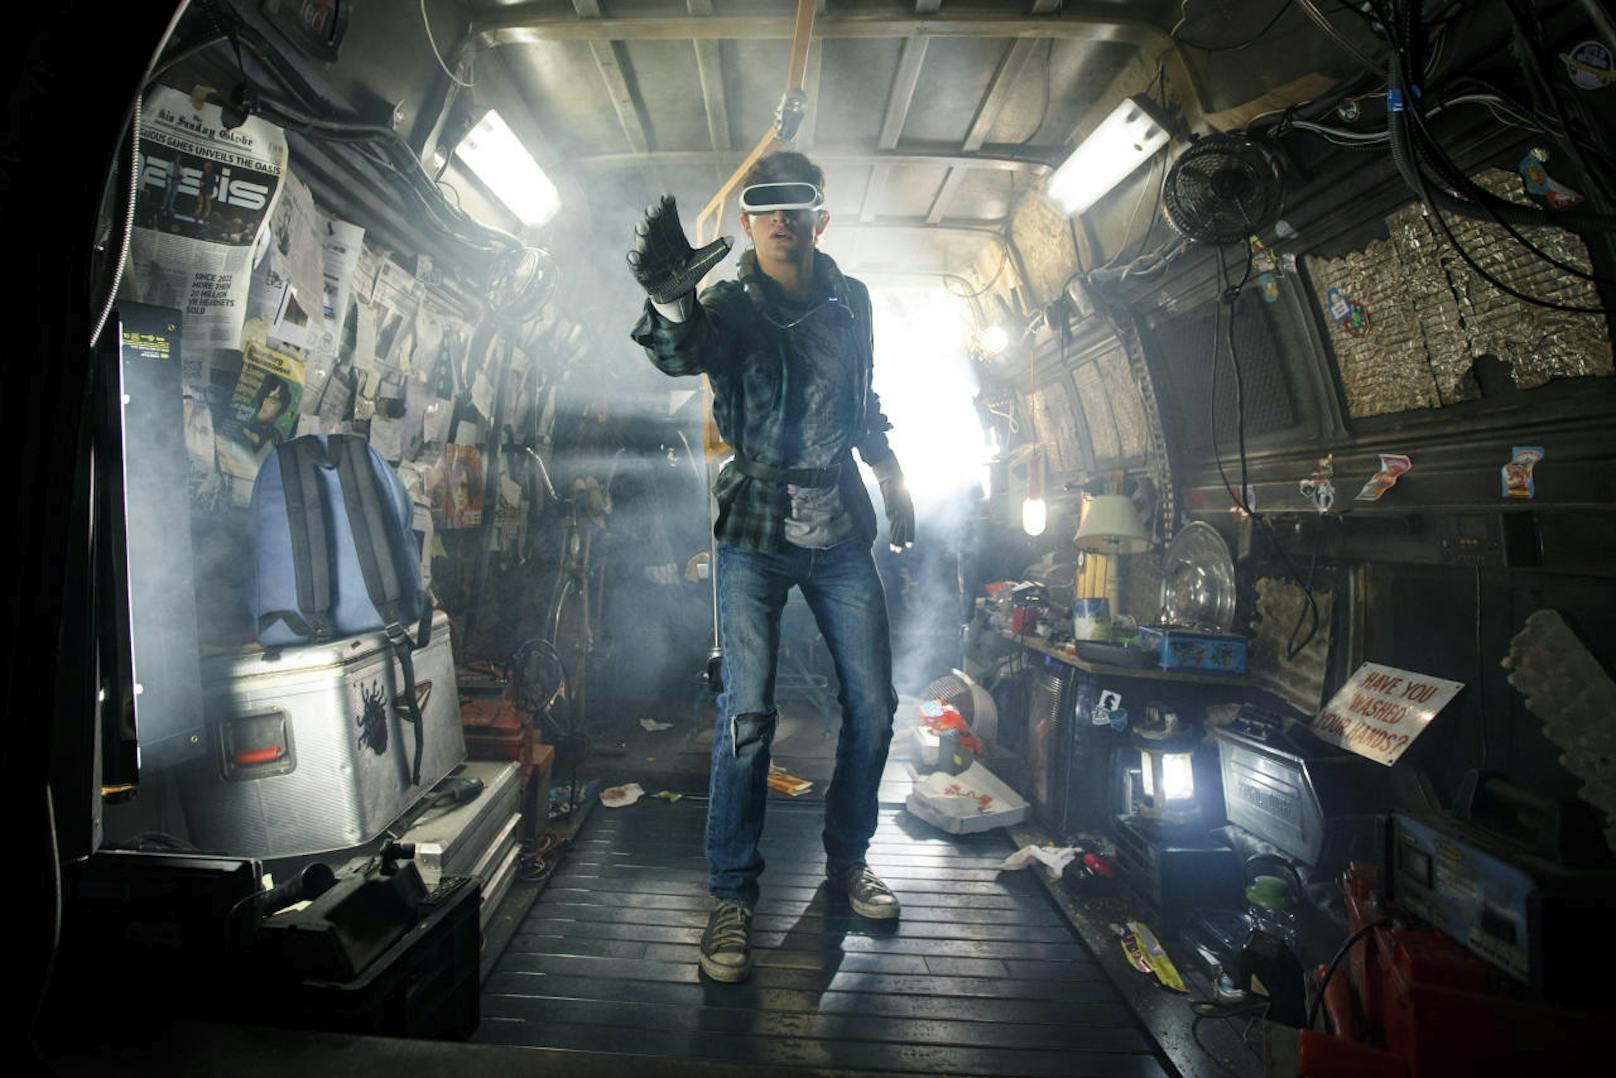 Neues Sci-Fi-Spektakel von Steven Spielberg: Tye Sheridan in der virtuellen Welt von "Ready Player One" nach einem wertvollen Easter Egg. Kinostart: 6. April.